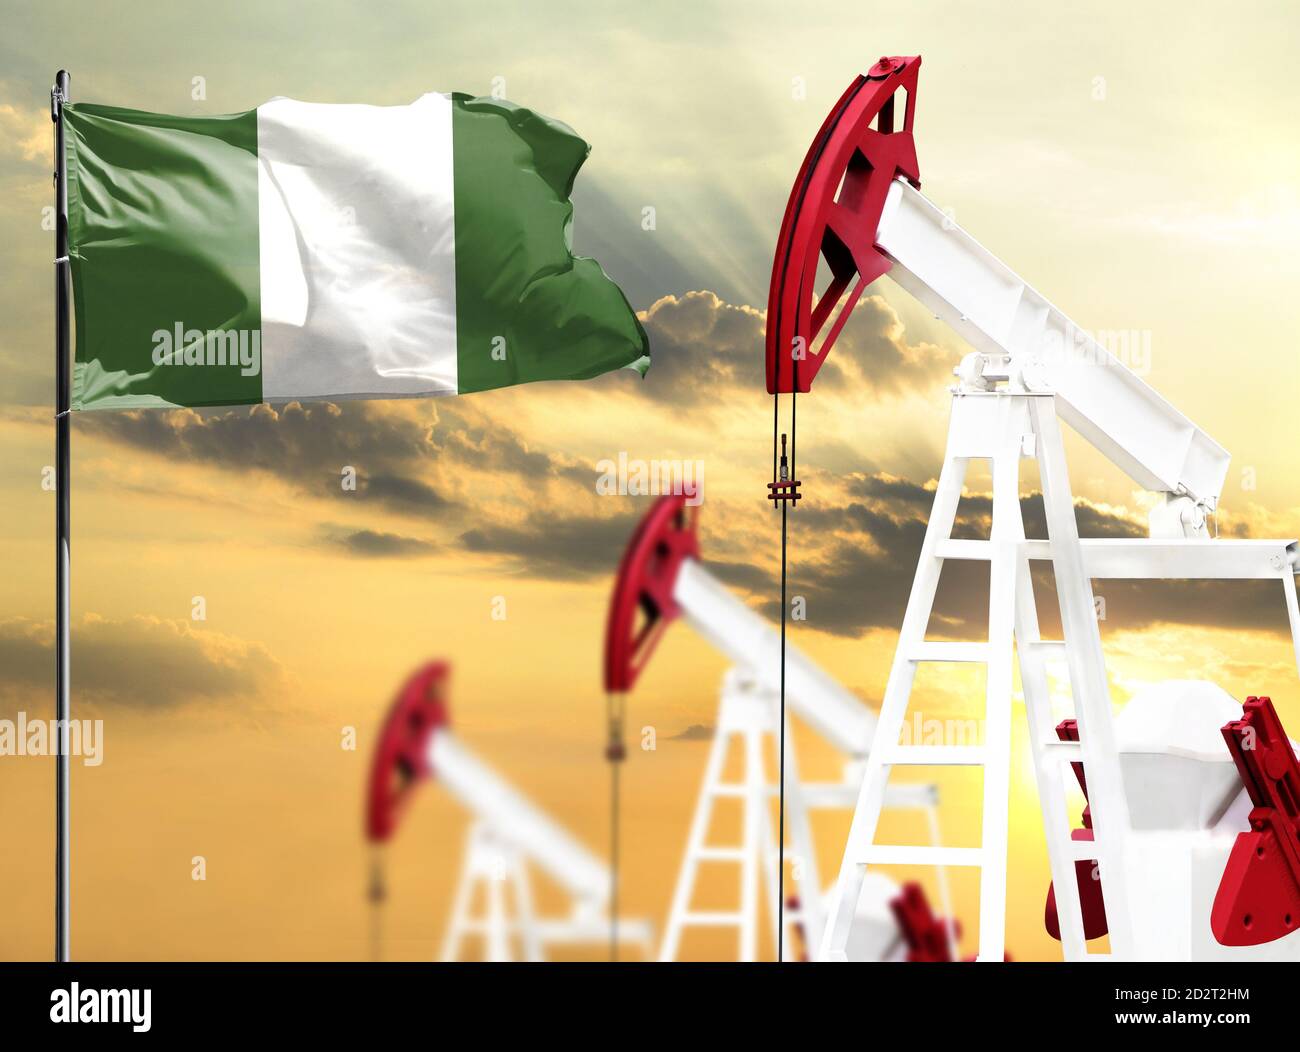 Ölbohrinseln vor dem Hintergrund des bunten Himmels und einer Fahnenstange mit der Flagge Nigerias. Das Konzept der Ölproduktion, Mineralien, Entwicklung von neuen Stockfoto